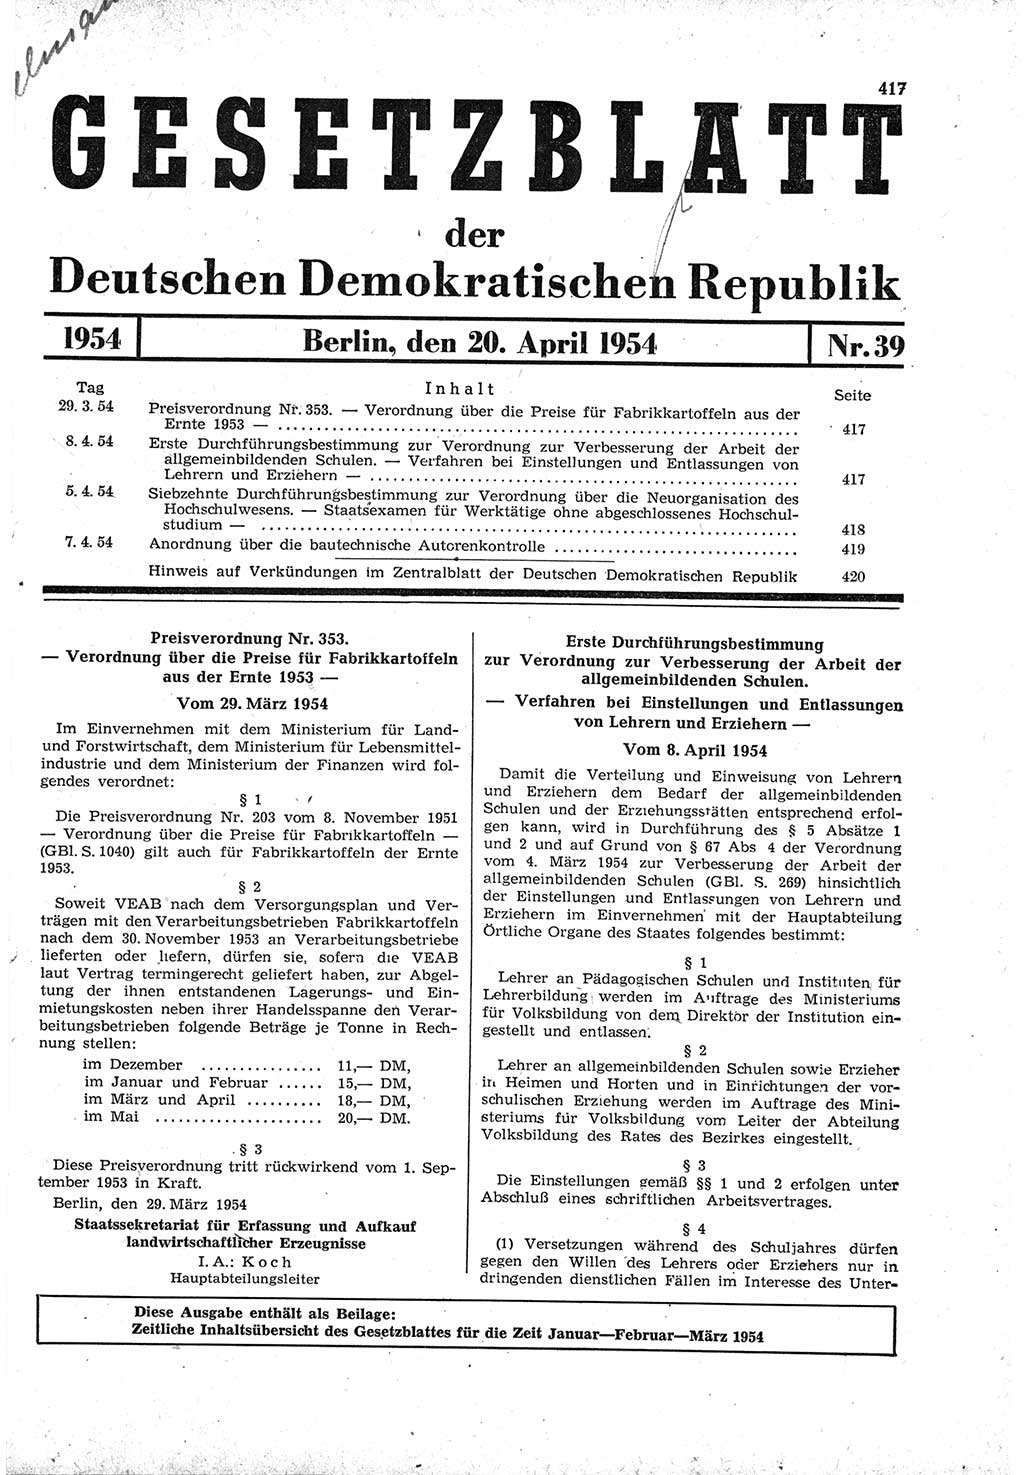 Gesetzblatt (GBl.) der Deutschen Demokratischen Republik (DDR) 1954, Seite 417 (GBl. DDR 1954, S. 417)